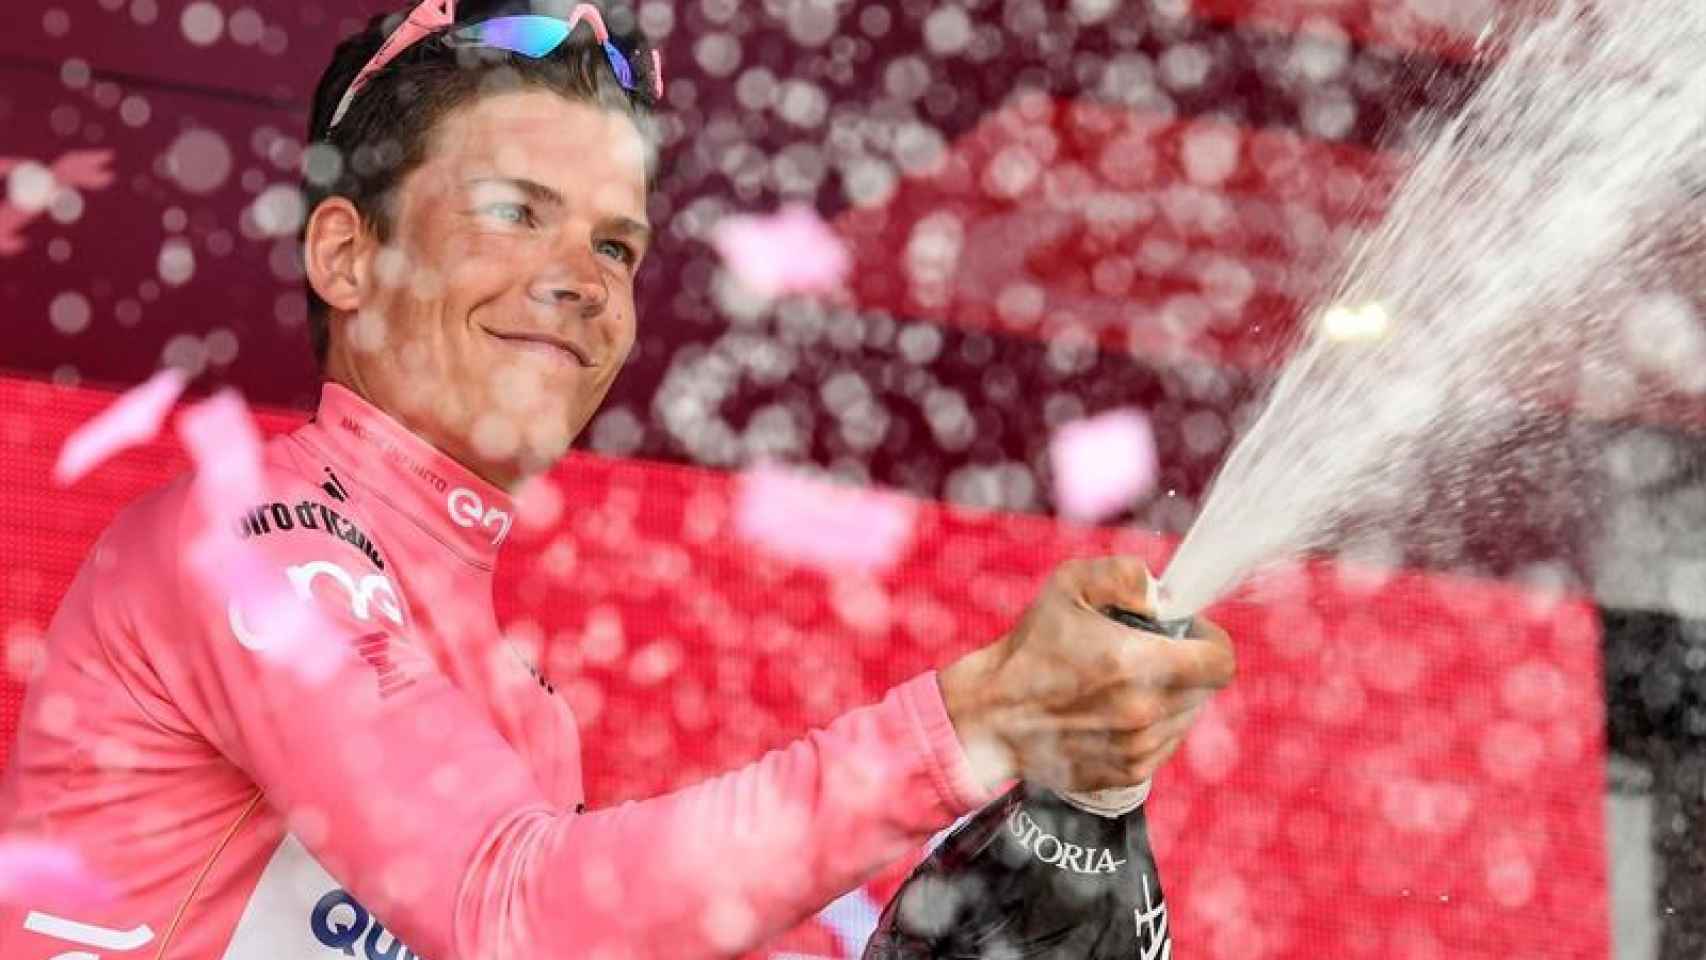 Jungels celebra su victoria en el Giro.